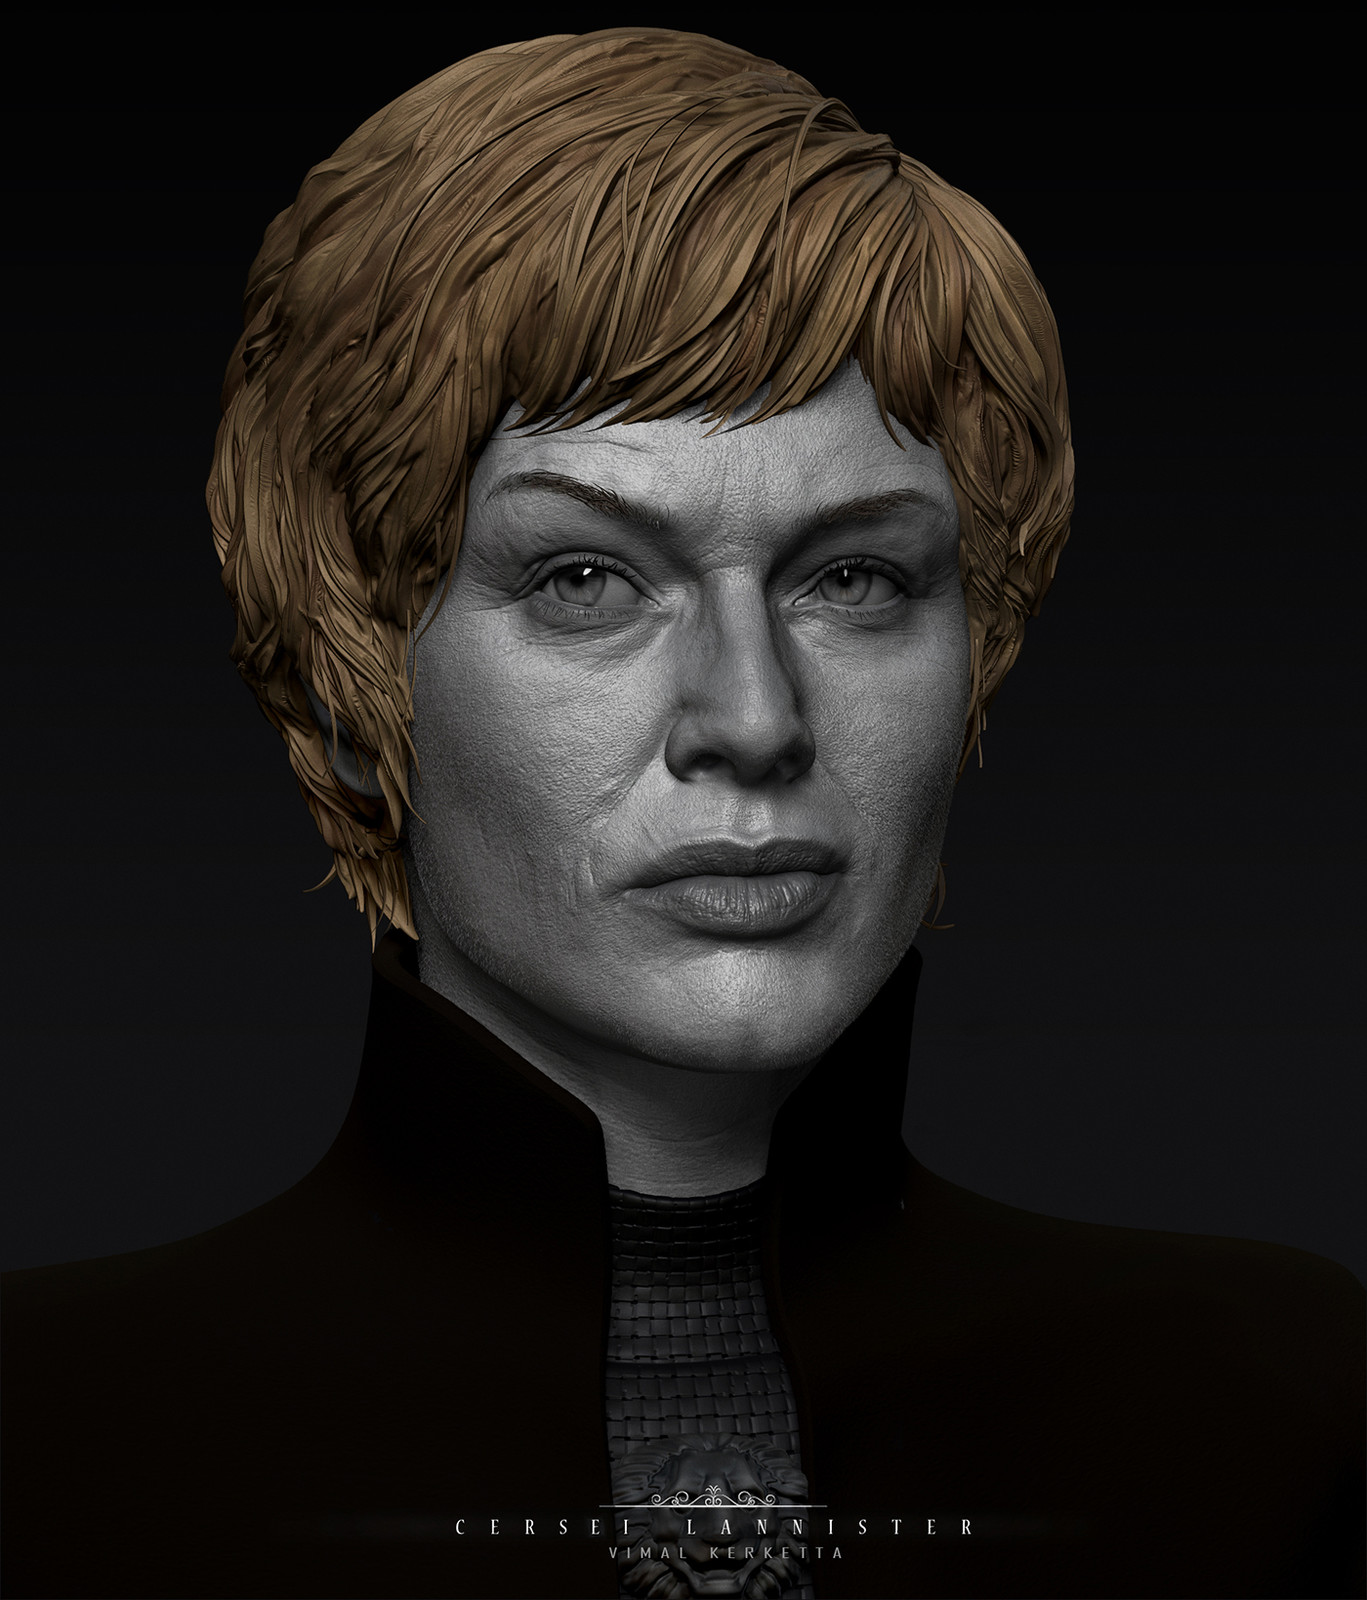 Cersei Lannister - Lena Headey